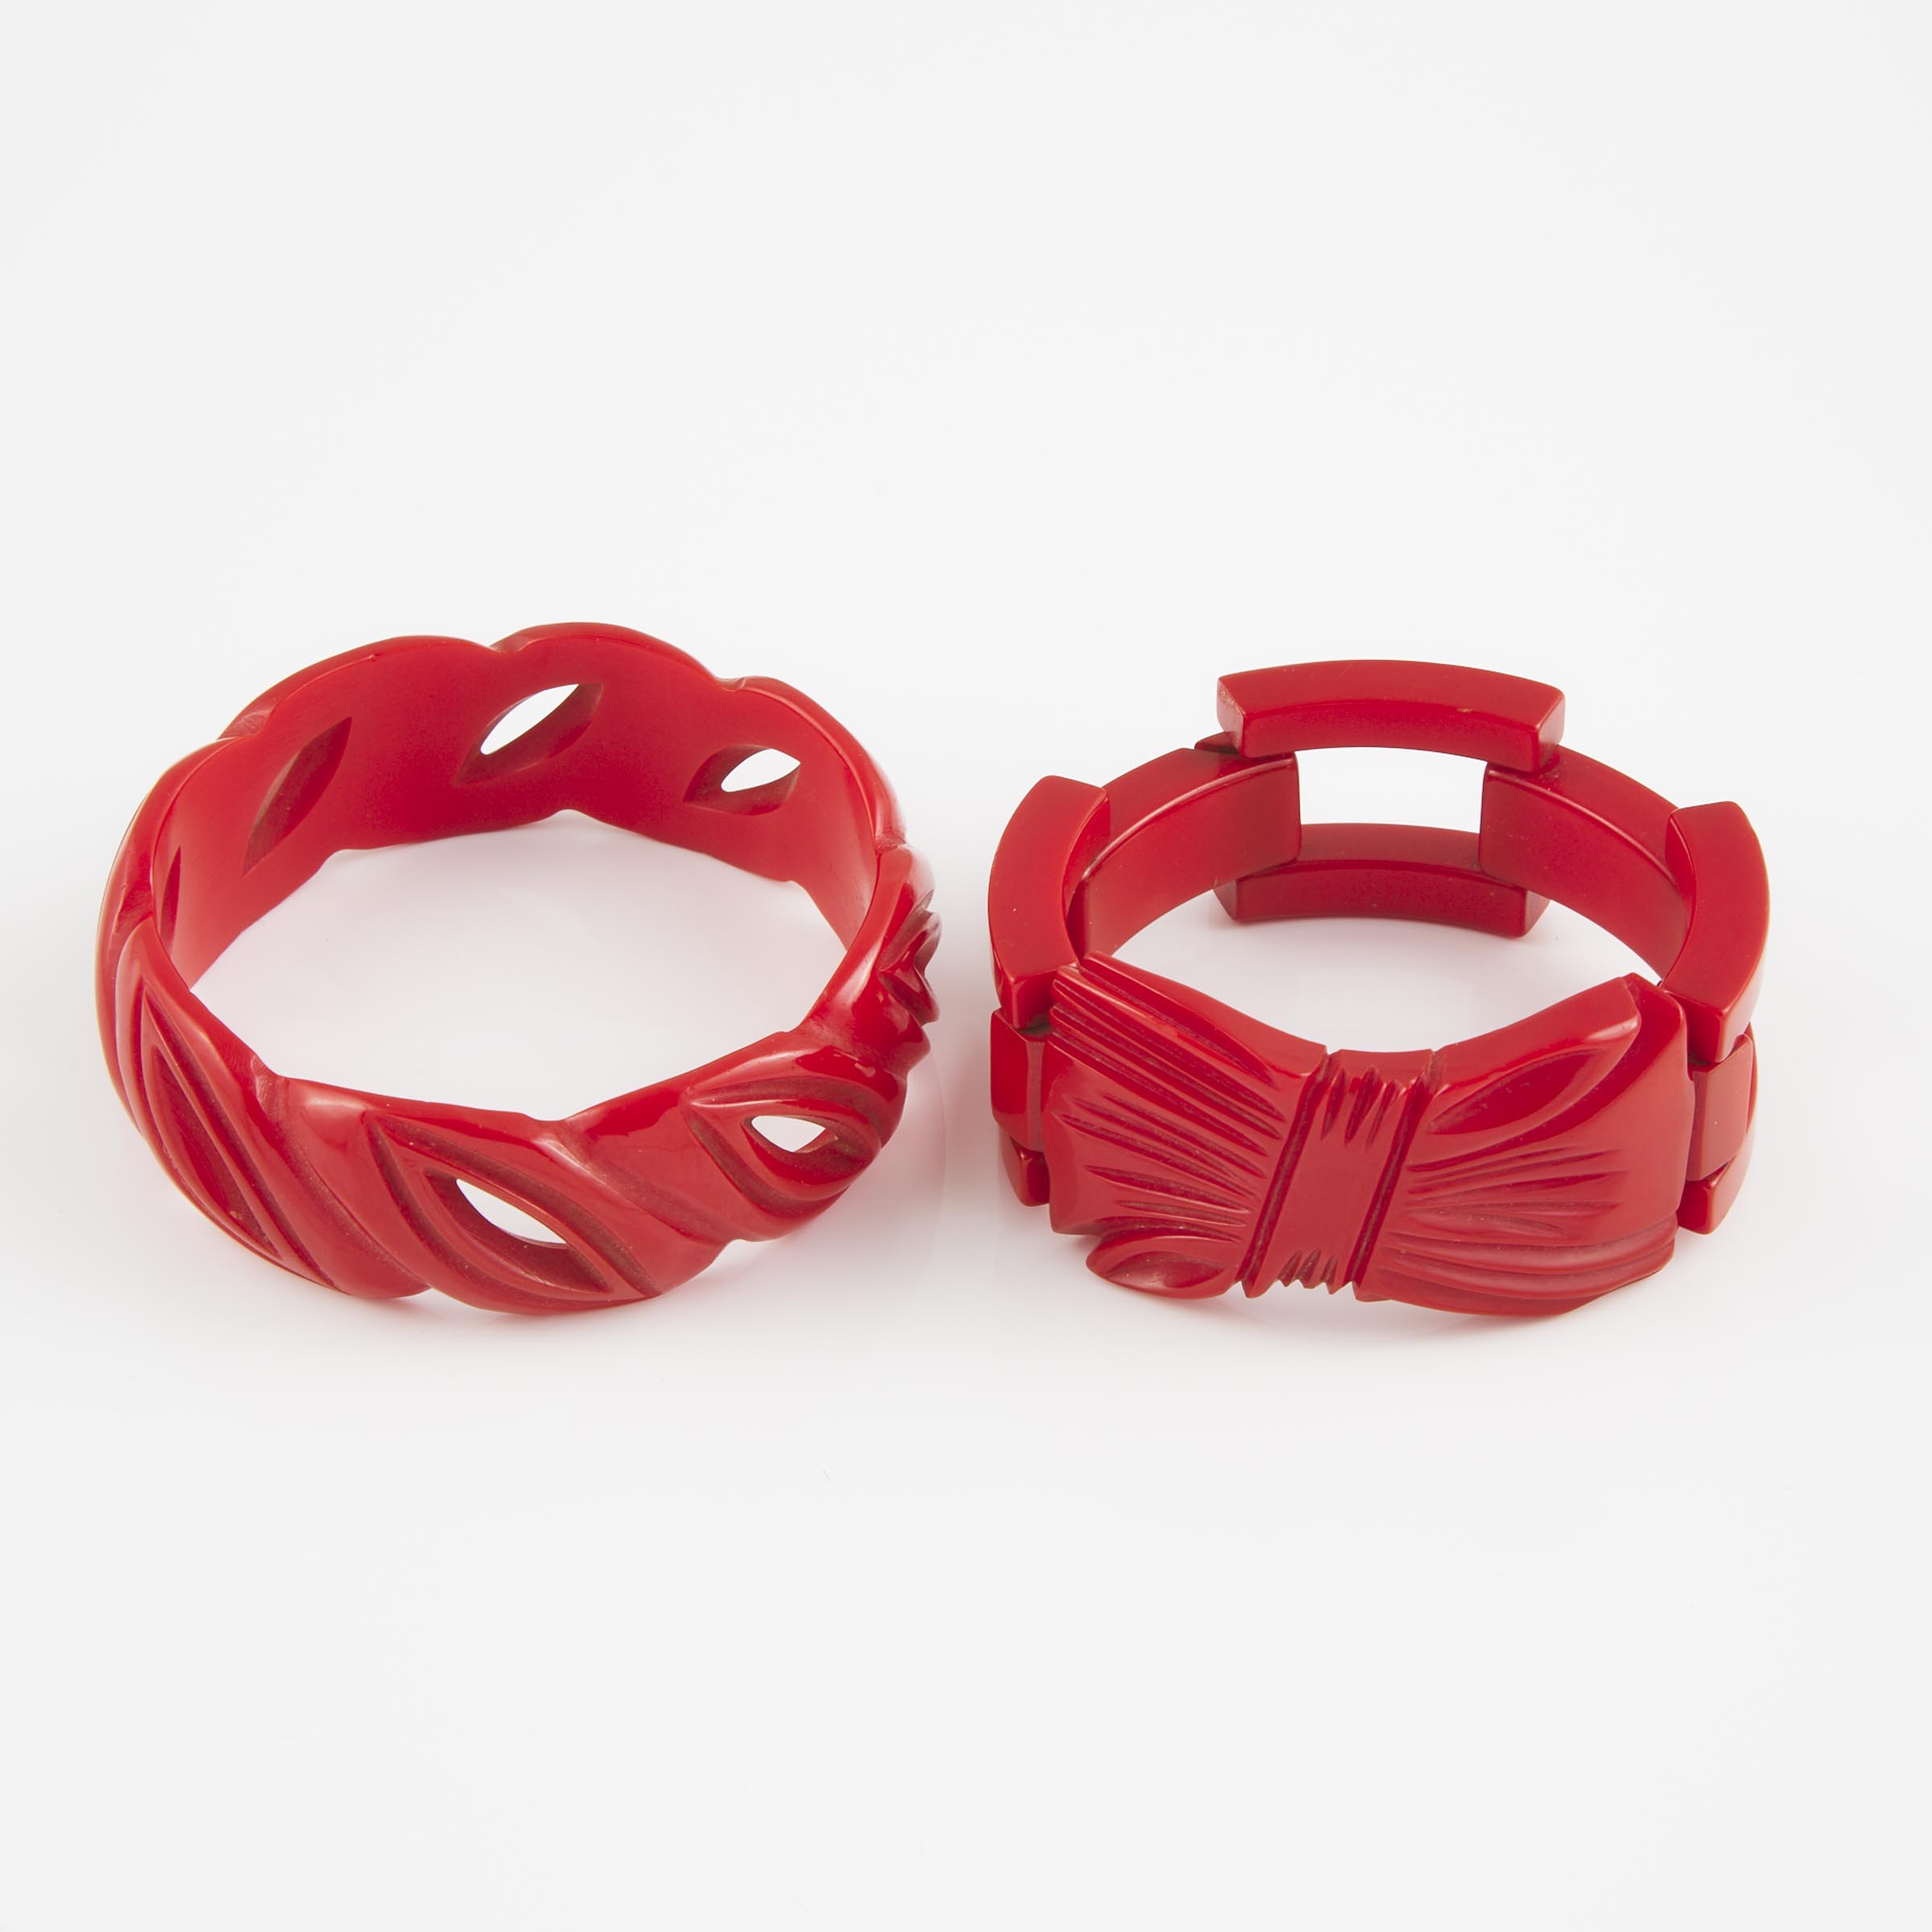 2 Carved Red Bakelite Bracelets